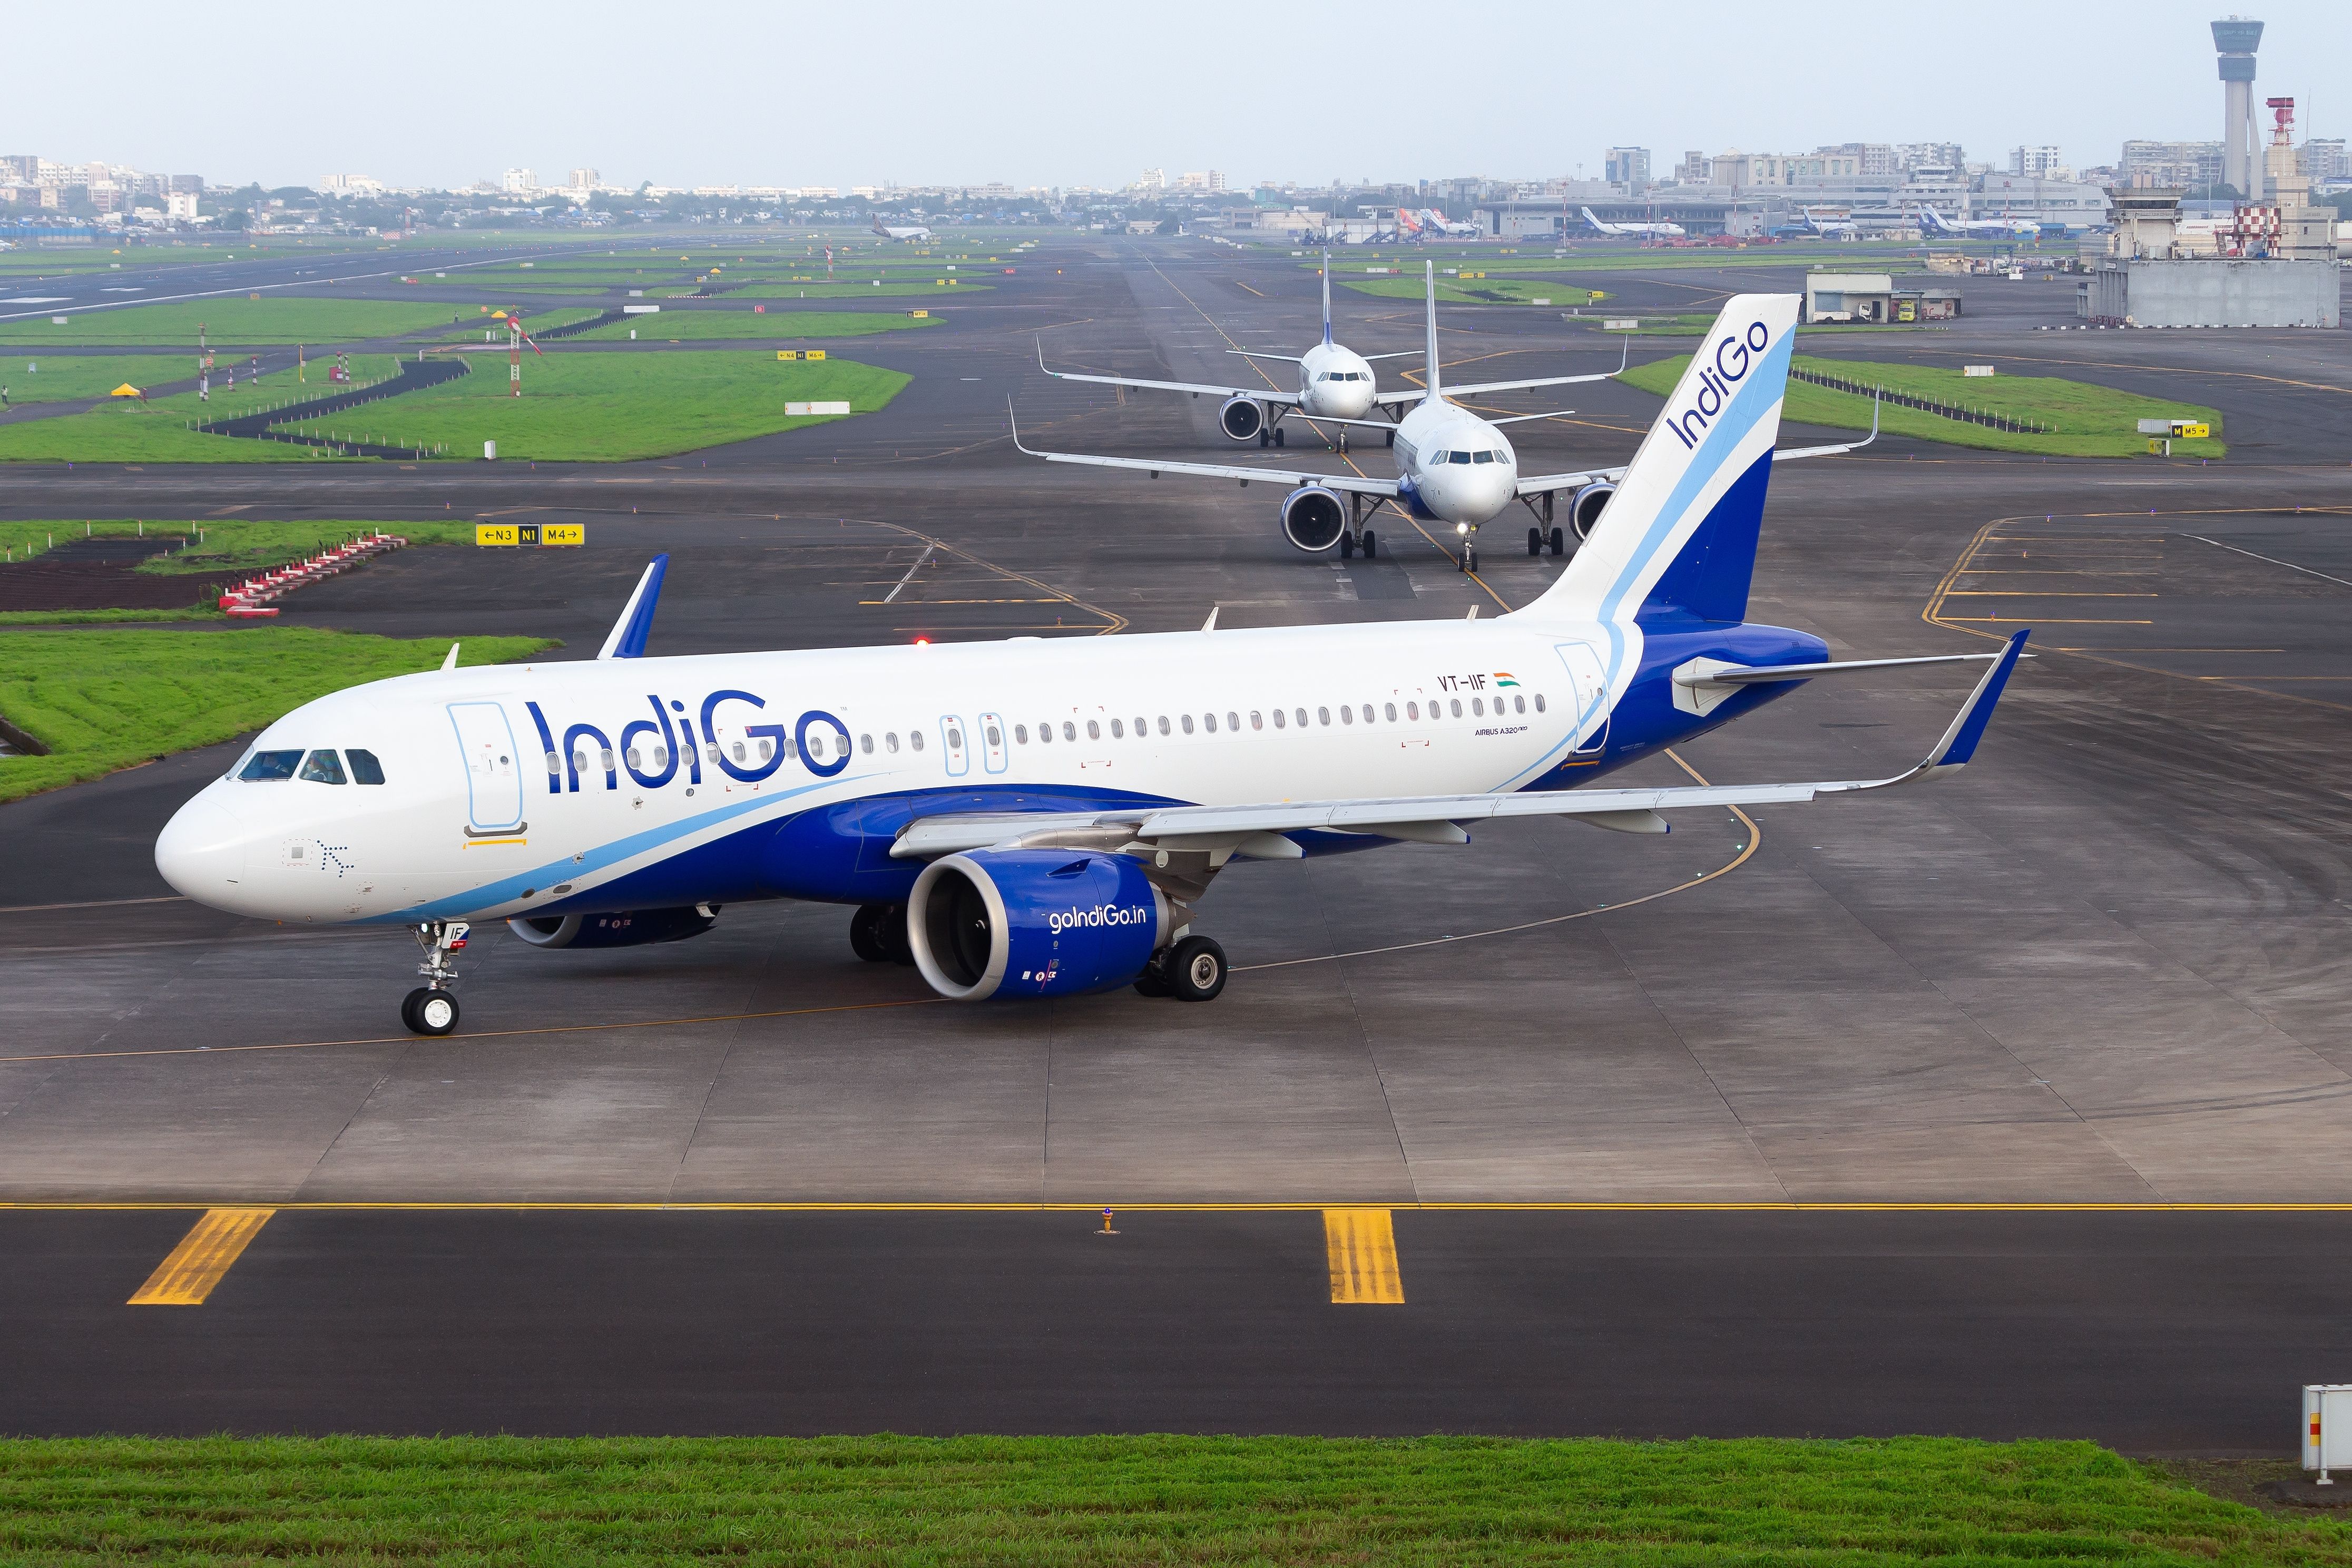 Indigo A320neo taxiing at an airport